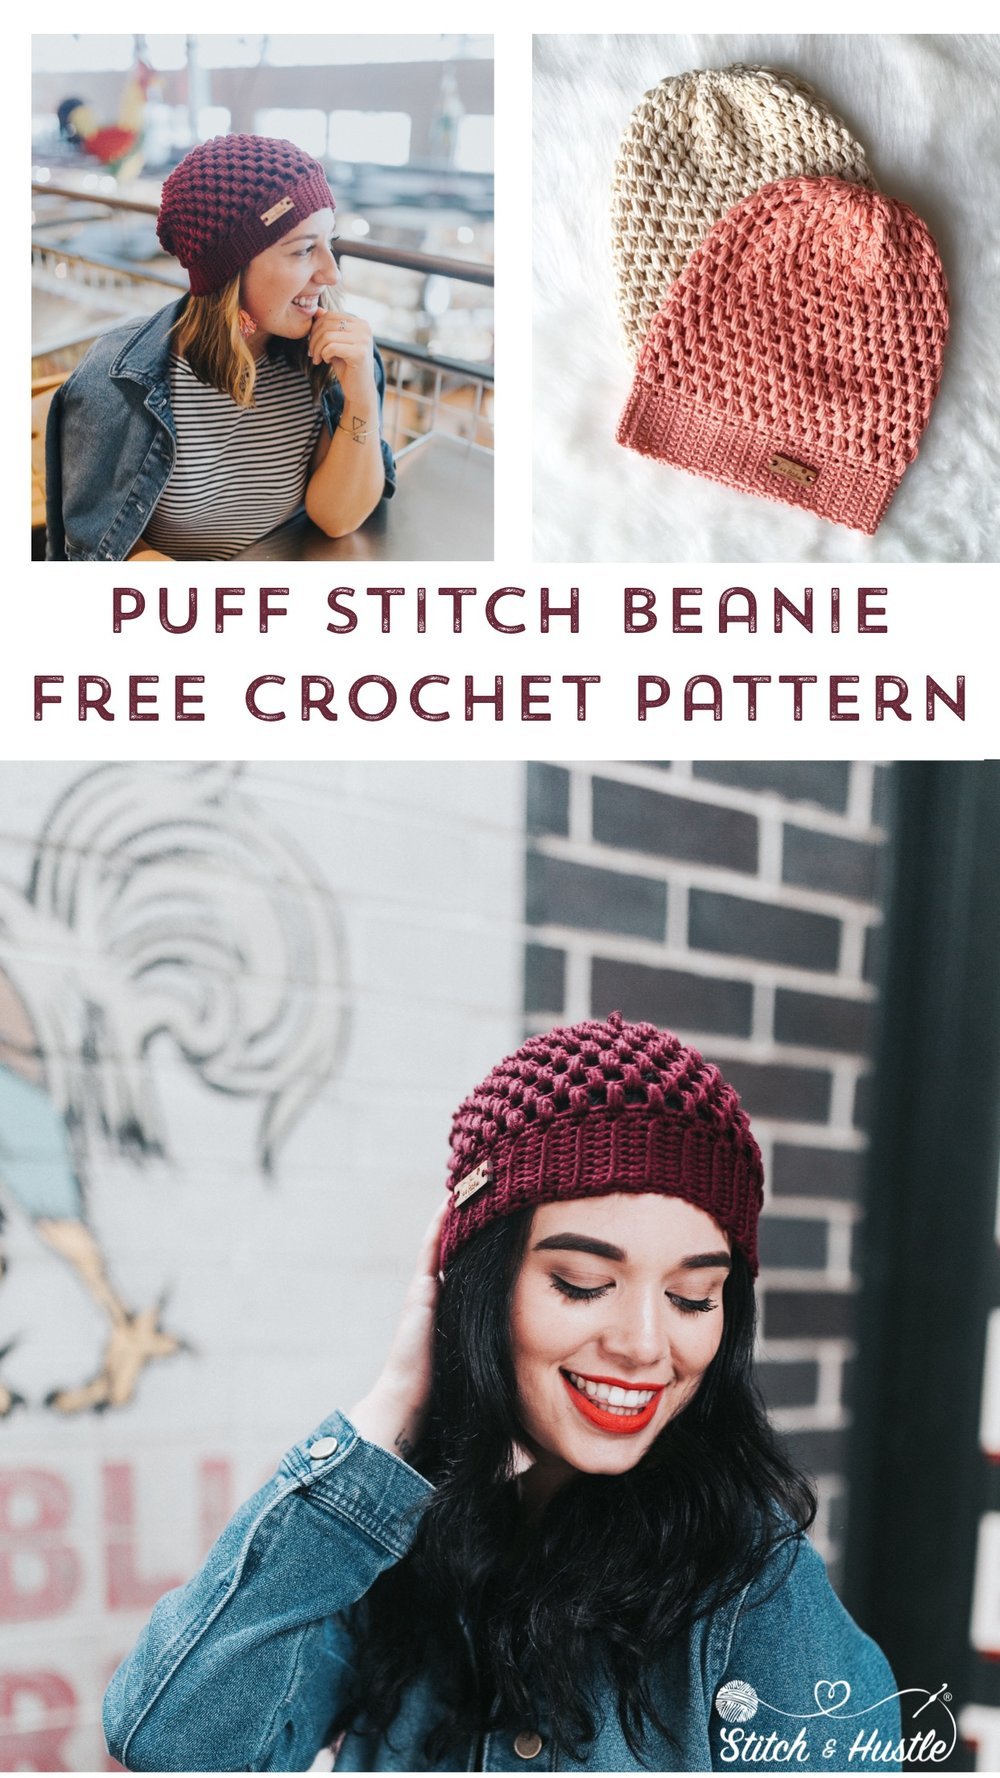 Crochet Winter Hat Free Pattern Helix Puff Stitch Hat Free Pattern Stitch Hustle